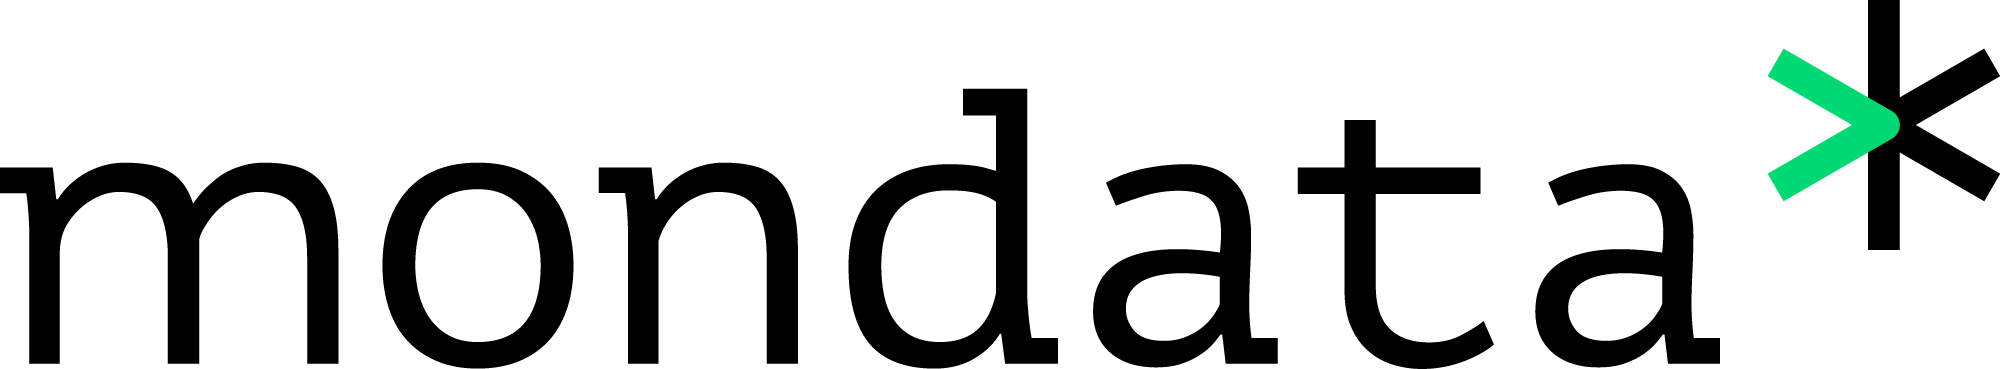 Mondata logo